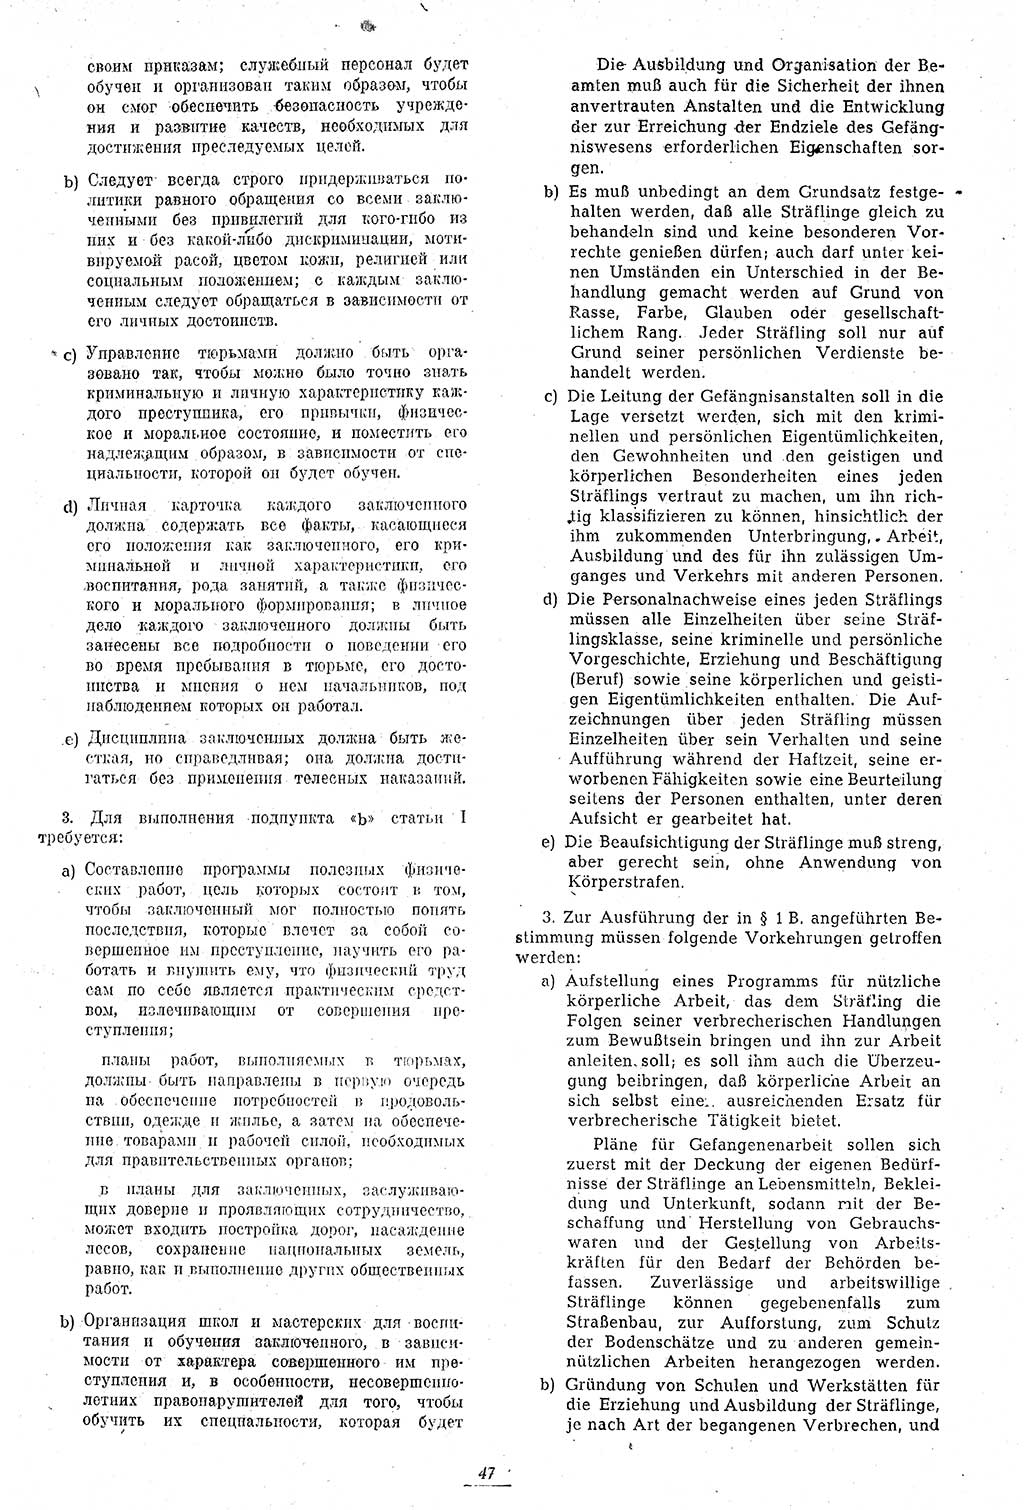 Amtsblatt des Kontrollrats (ABlKR) in Deutschland 1946, Seite 47/2 (ABlKR Dtl. 1946, S. 47/2)